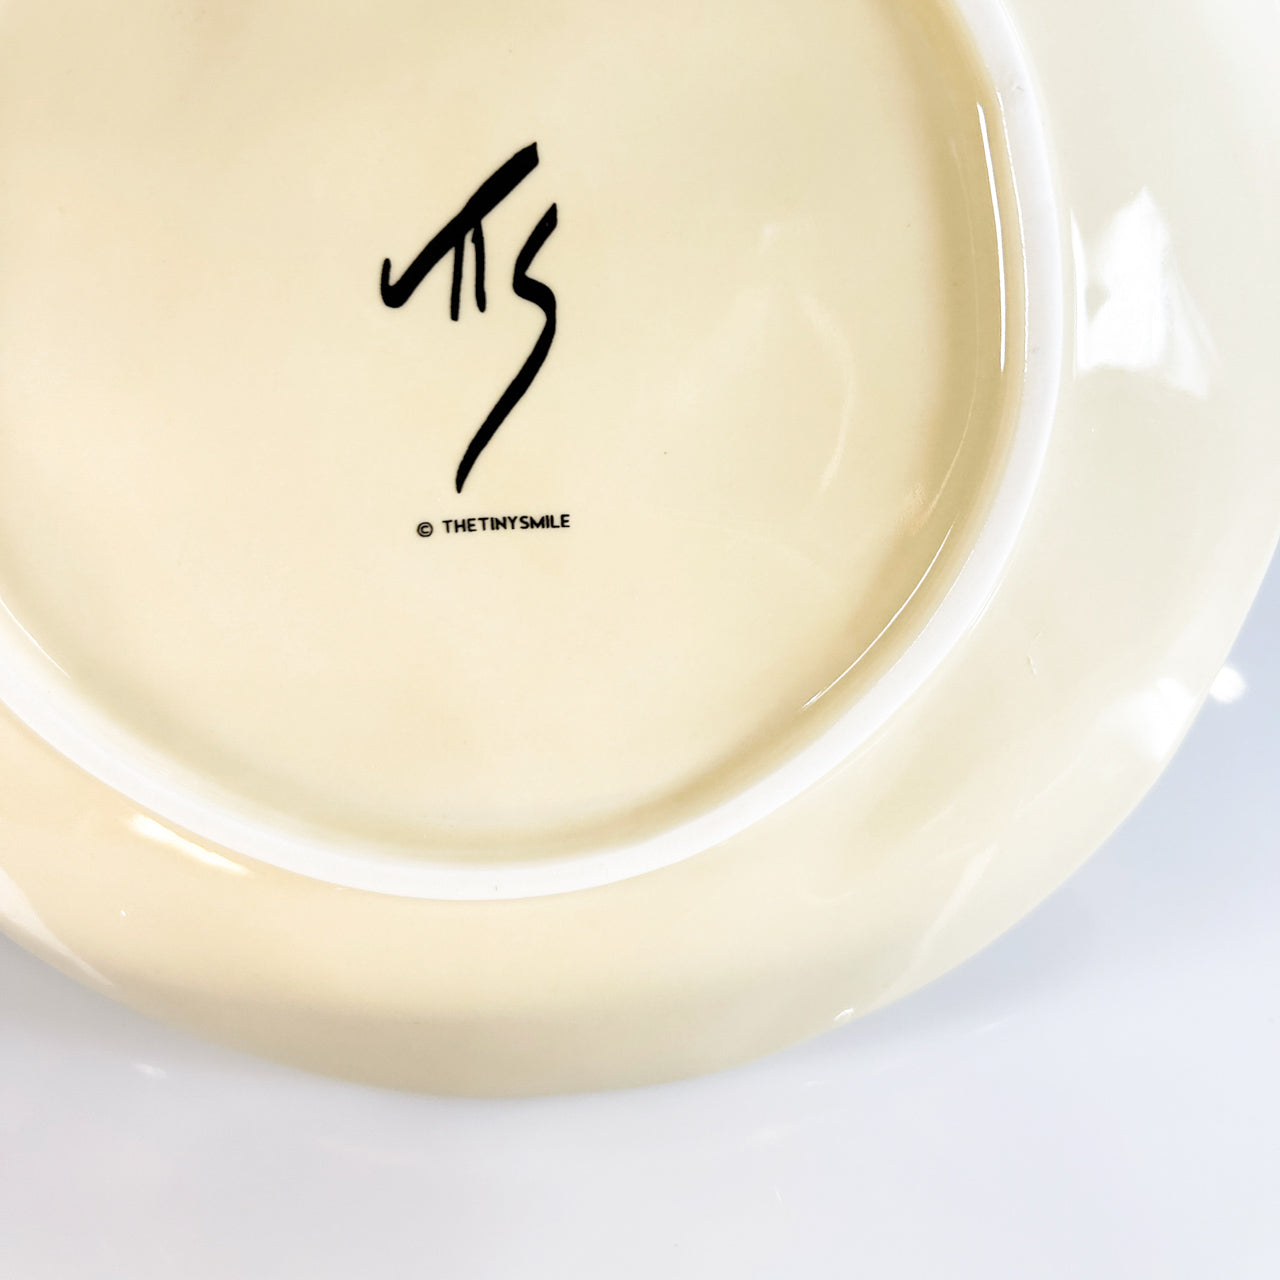 創意搬家禮物 家居擺設 藝術家 陶瓷裝飾碟 彩色 Housewarming Gift in Hong Kong Gifts For Home Affordable Art fornasetti handmade ceramic home decor